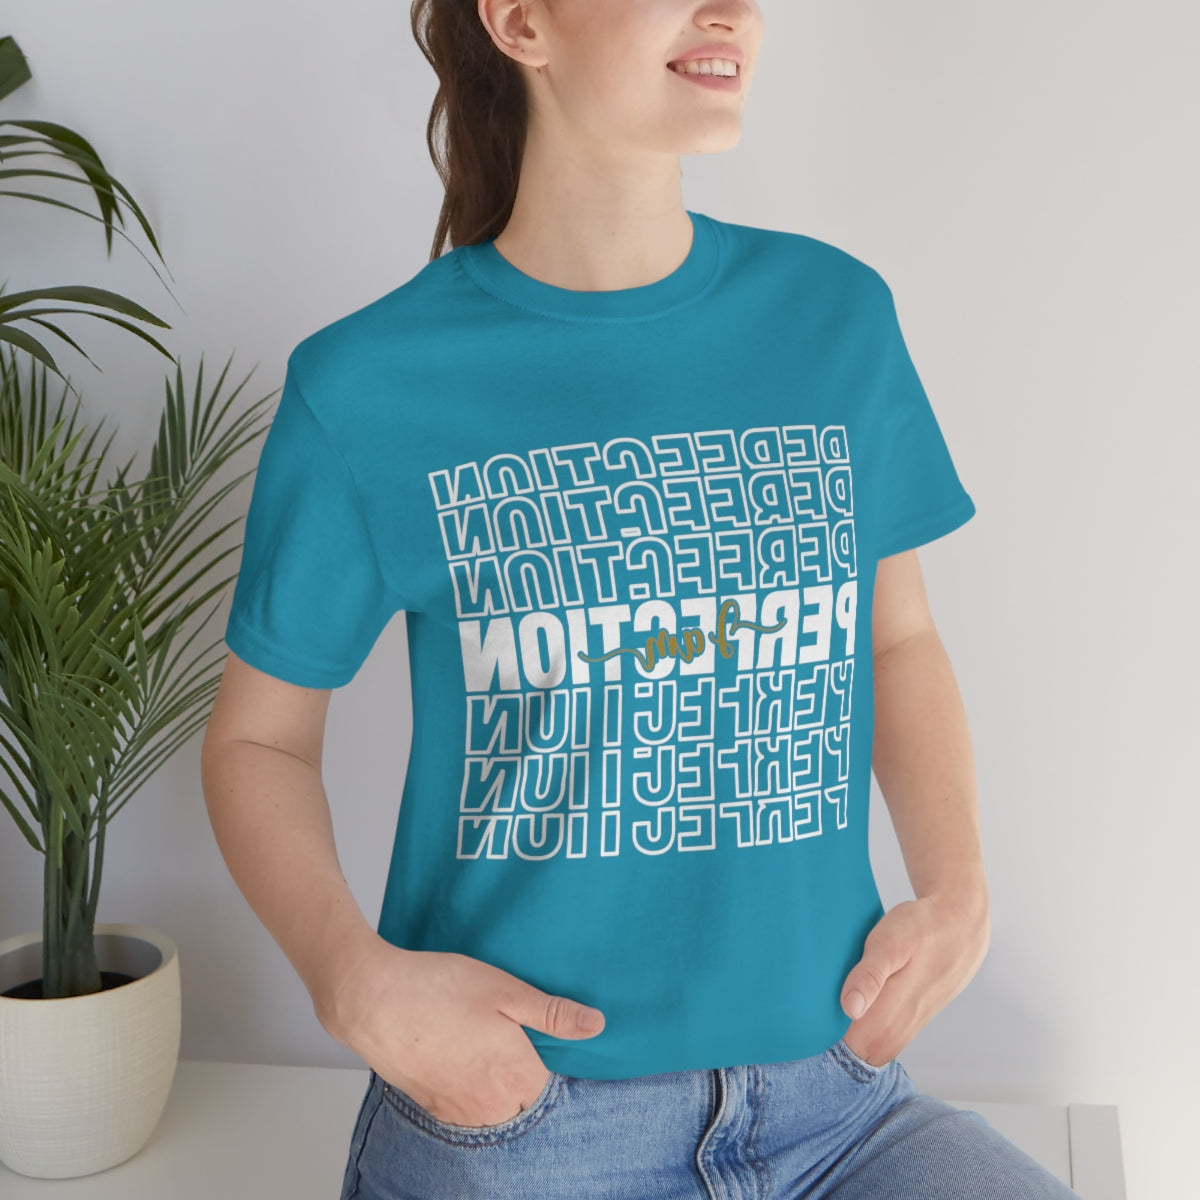 Affirmation Feminist Pro Choice T-Shirt Unisex Size, I am Perfection Printify